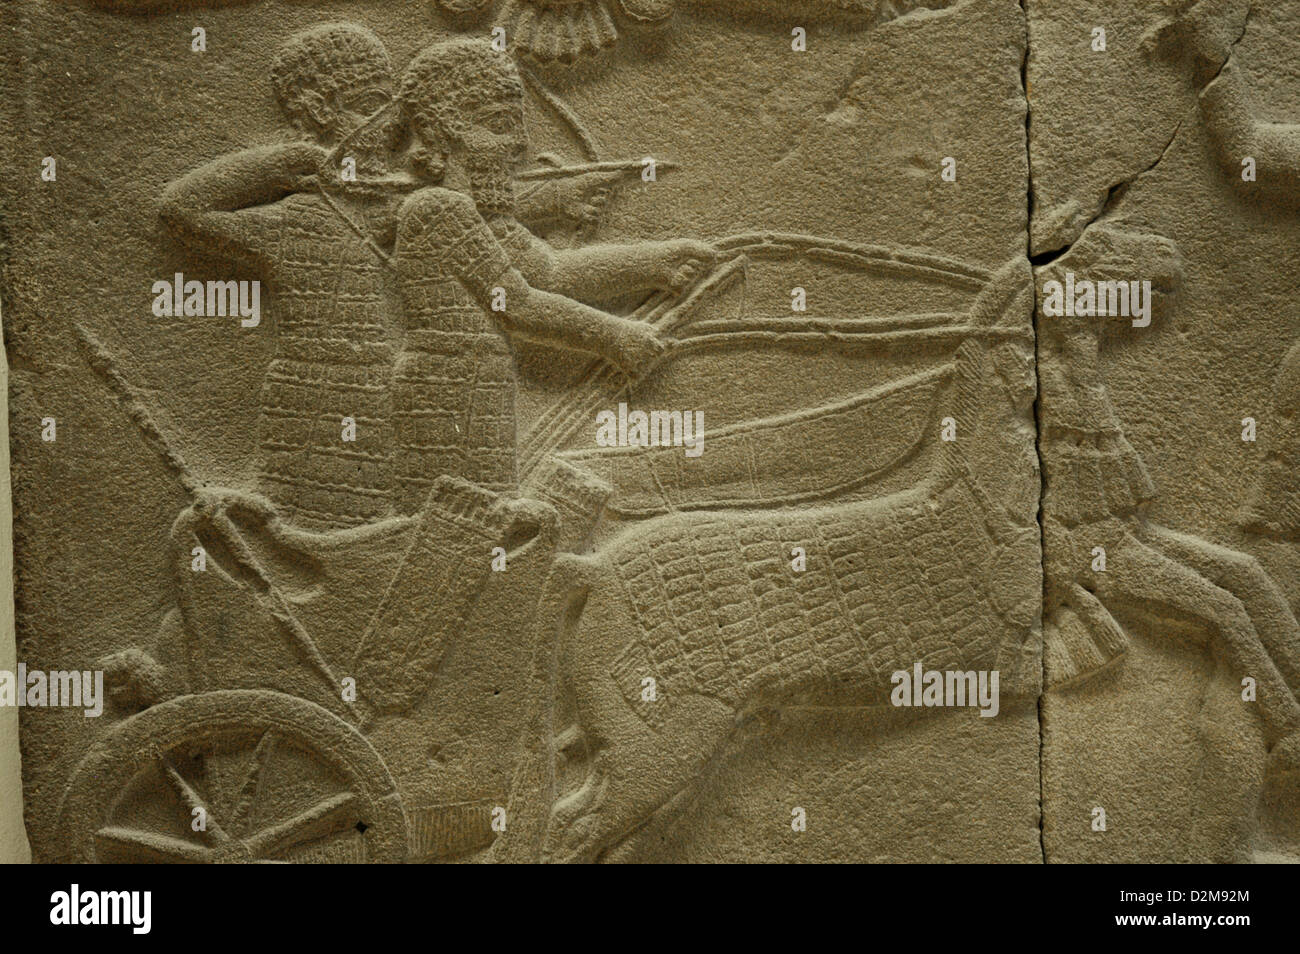 Relief Darstellung einer Löwenjagd. 750 V. CHR.. Basalt. Detail. Aus dem Palast Sakcegozu, Anatolien. Pergamon-Museum. Berlin. Stockfoto